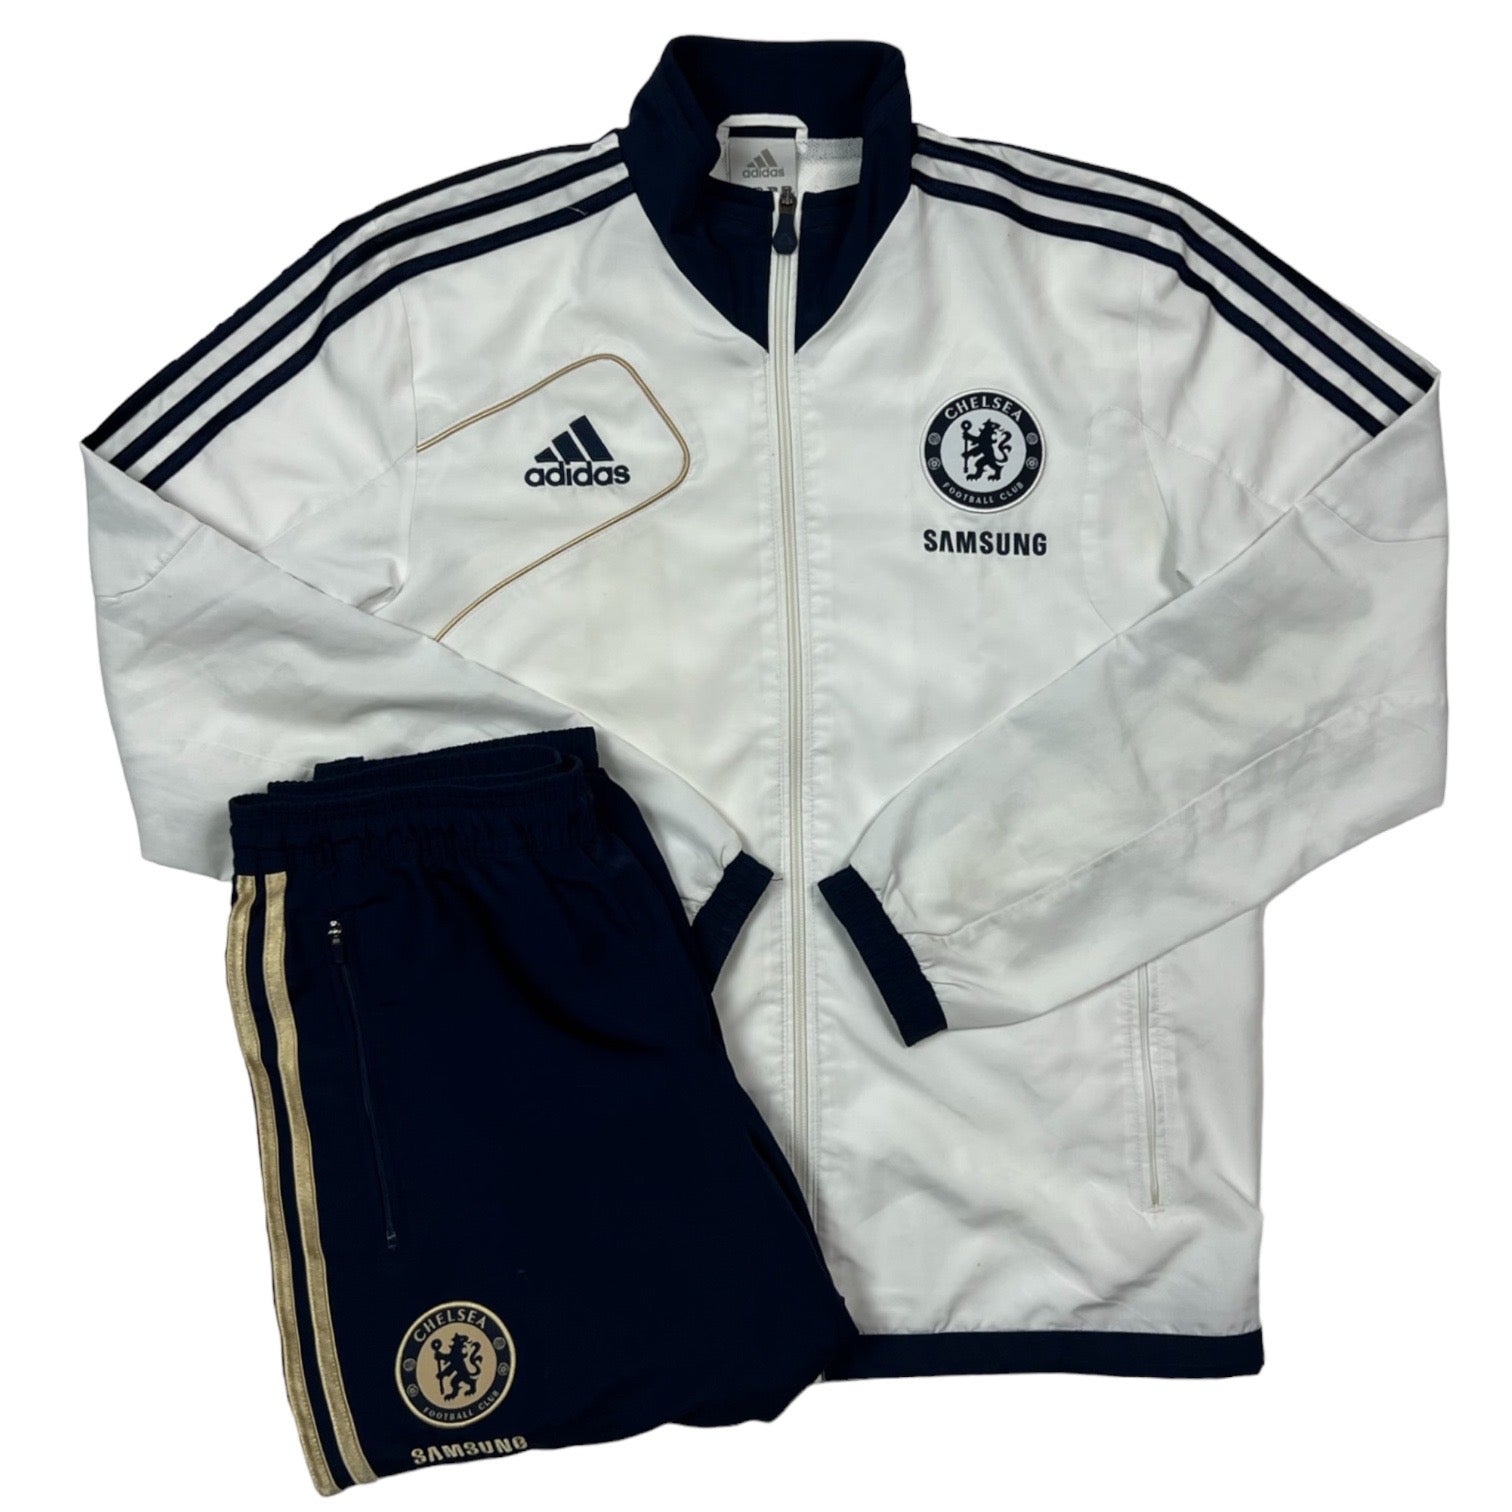 lb desconectado Definición Adidas Chelsea Fc Tracksuit (White/Navy Blue/Gold) – 2HA Basel